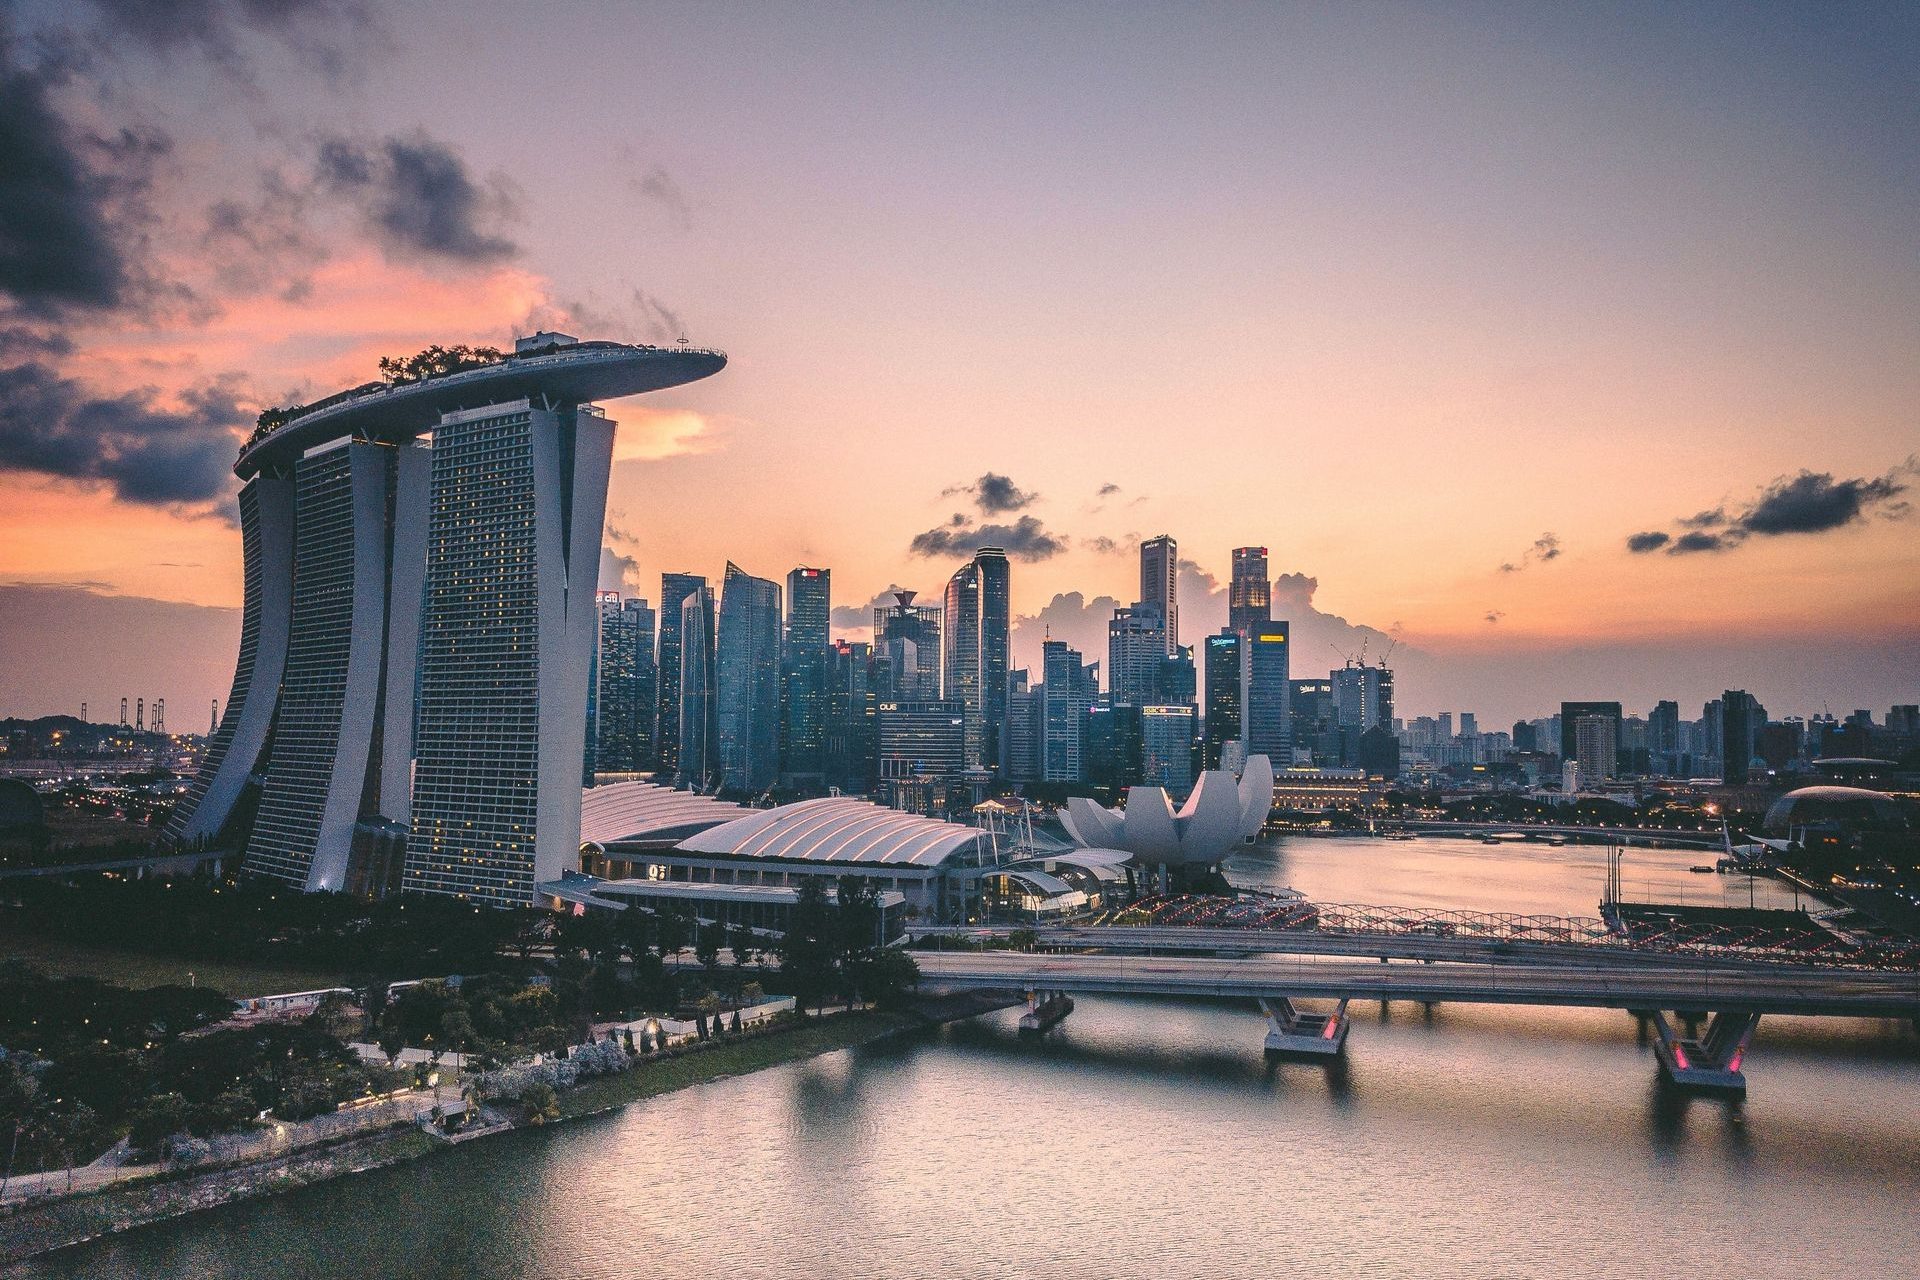 5# Singapur (249.800 Millionäre)